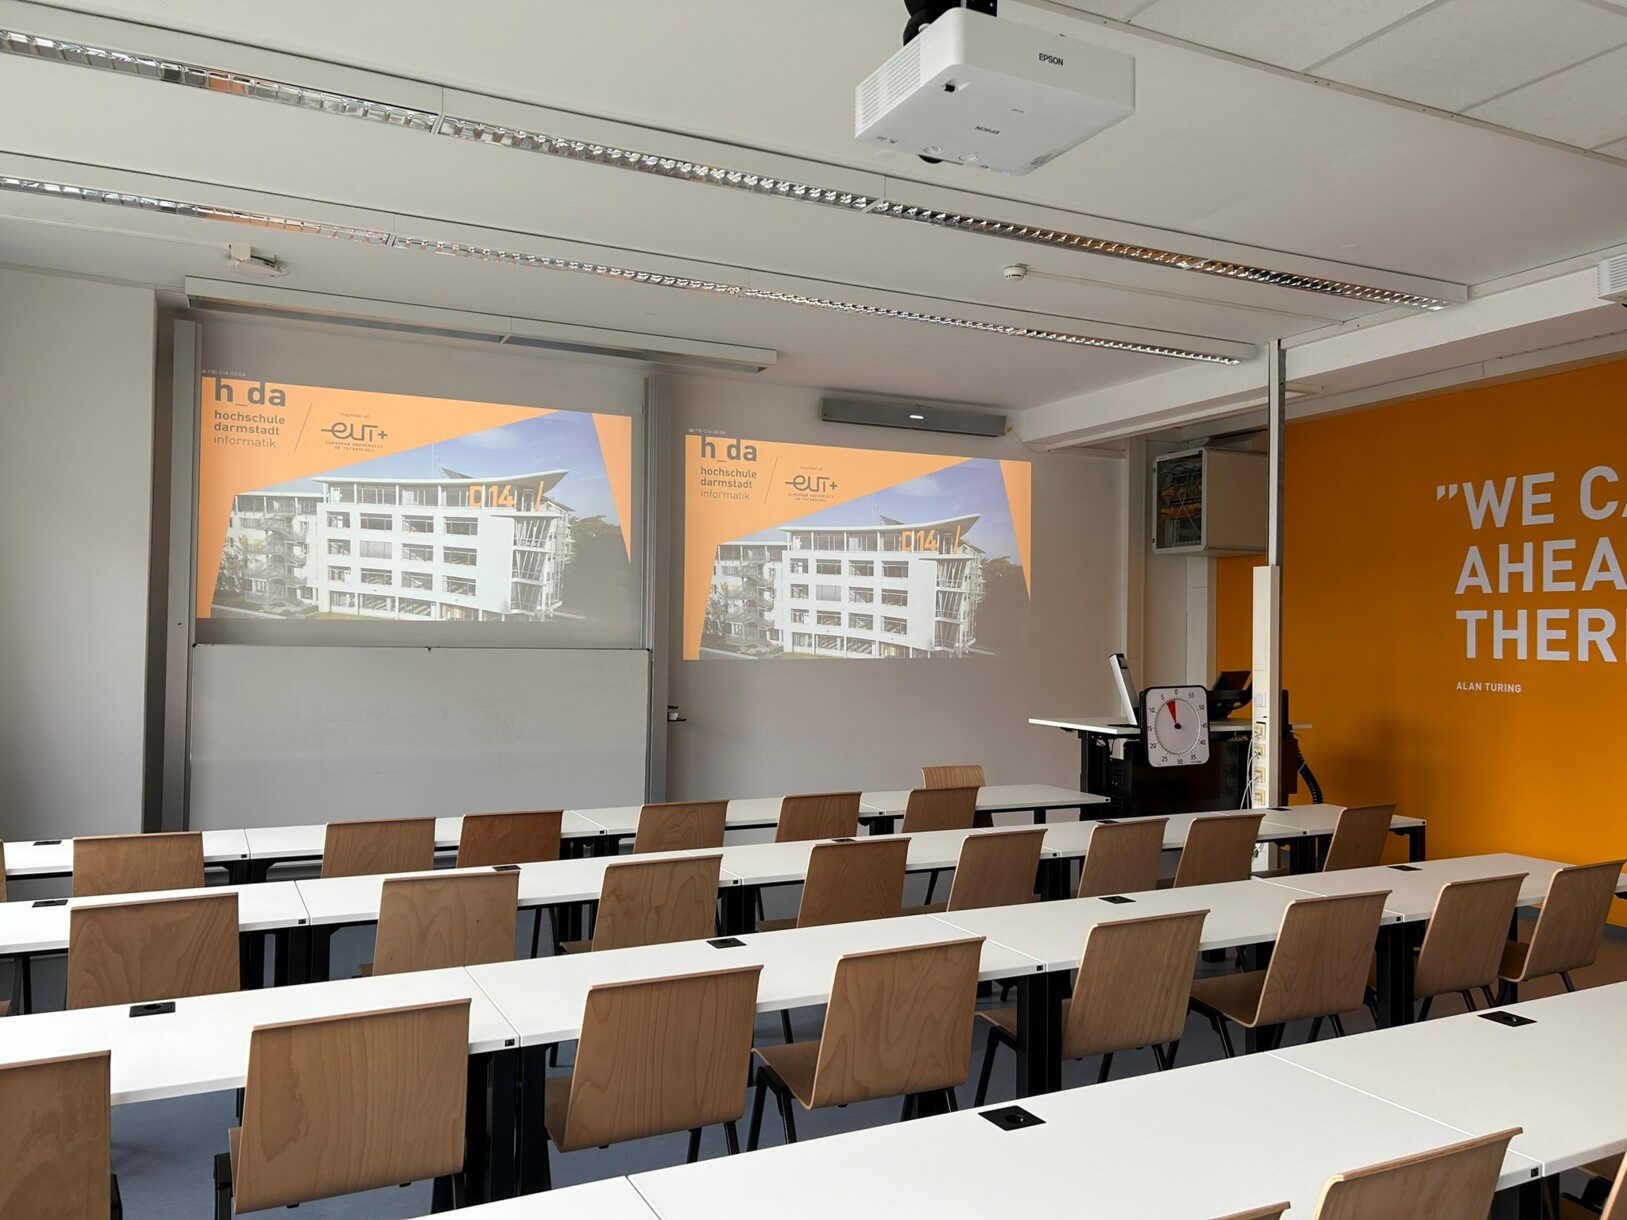 Aula seminaria dotata di Cynap Pro presso l'Università delle Scienze Applicate di Darmstadt.